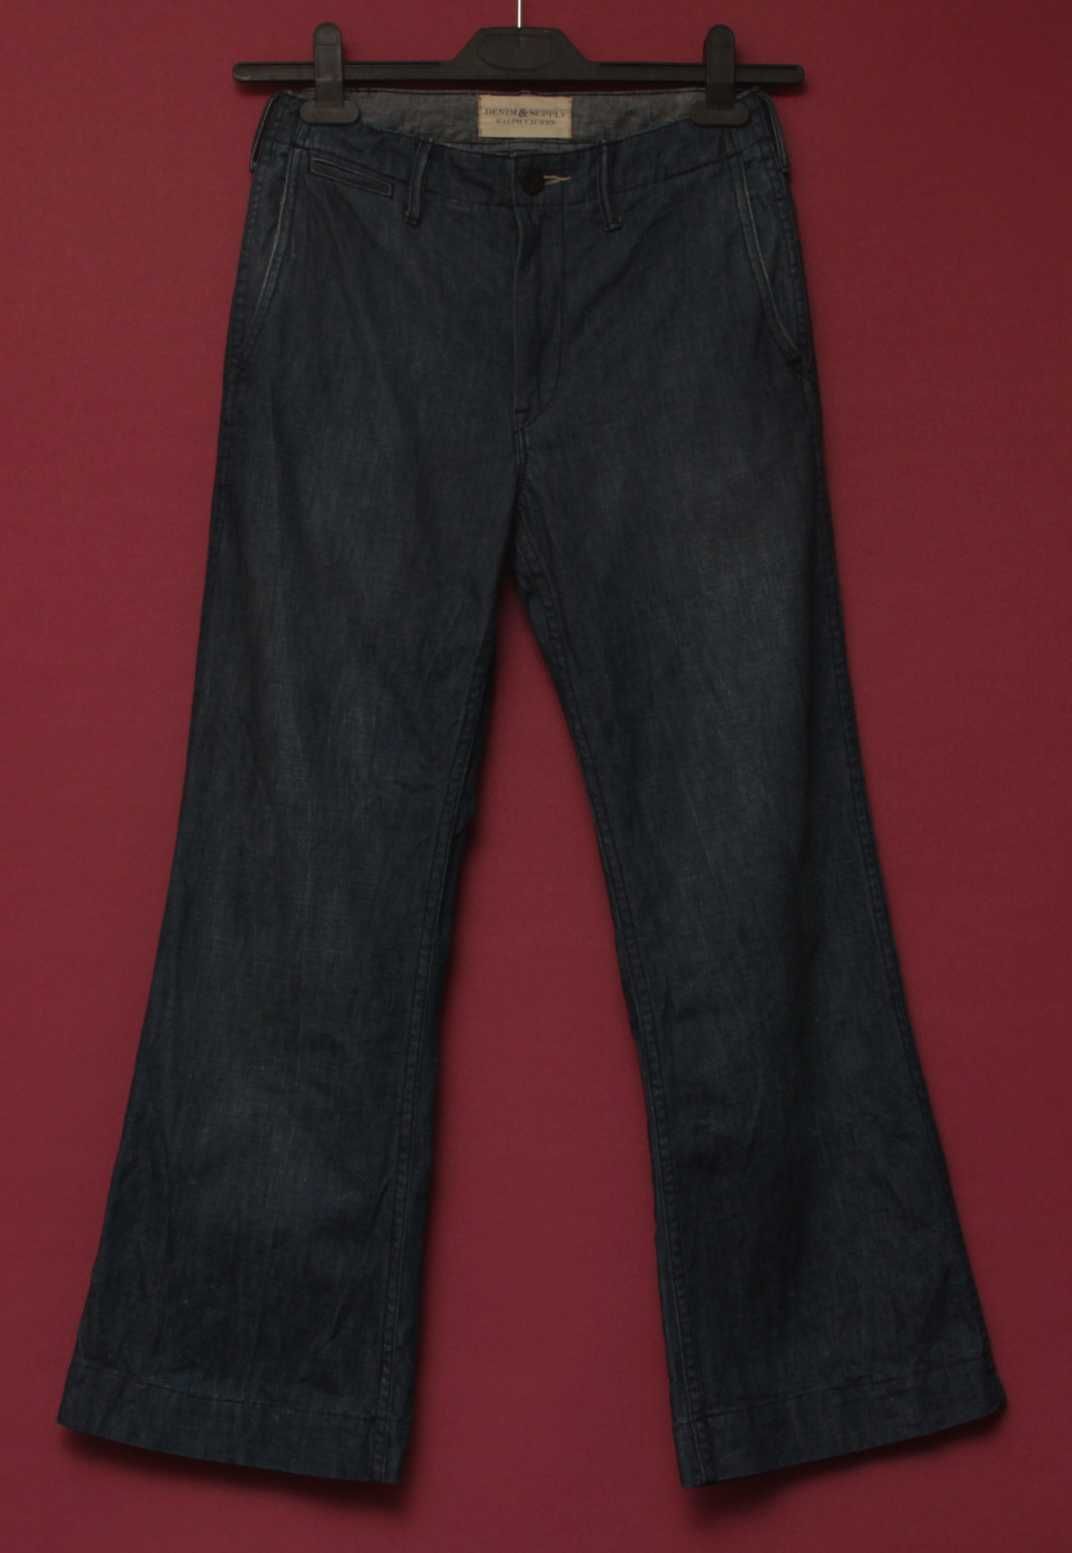 Polo Ralph Lauren 26 32 кюлоты из хлопка джинсы